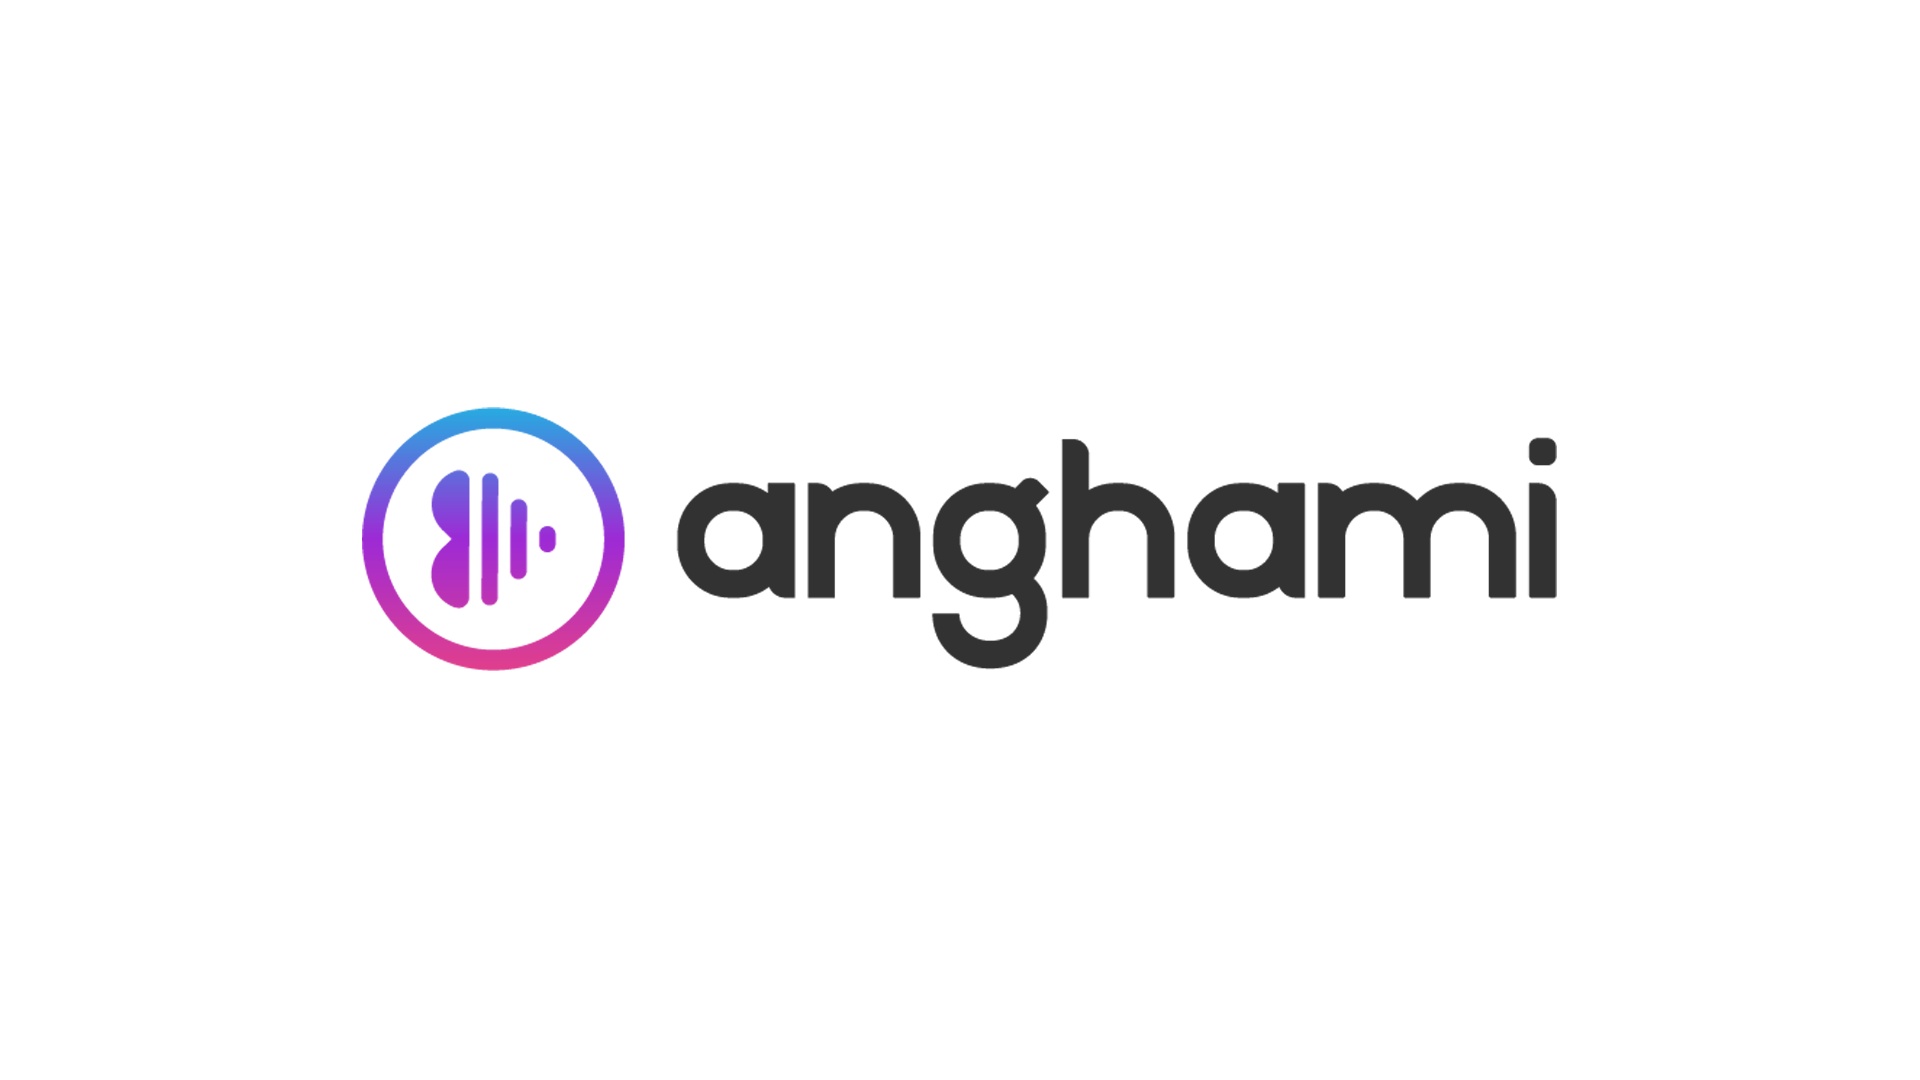 Anghami Logo